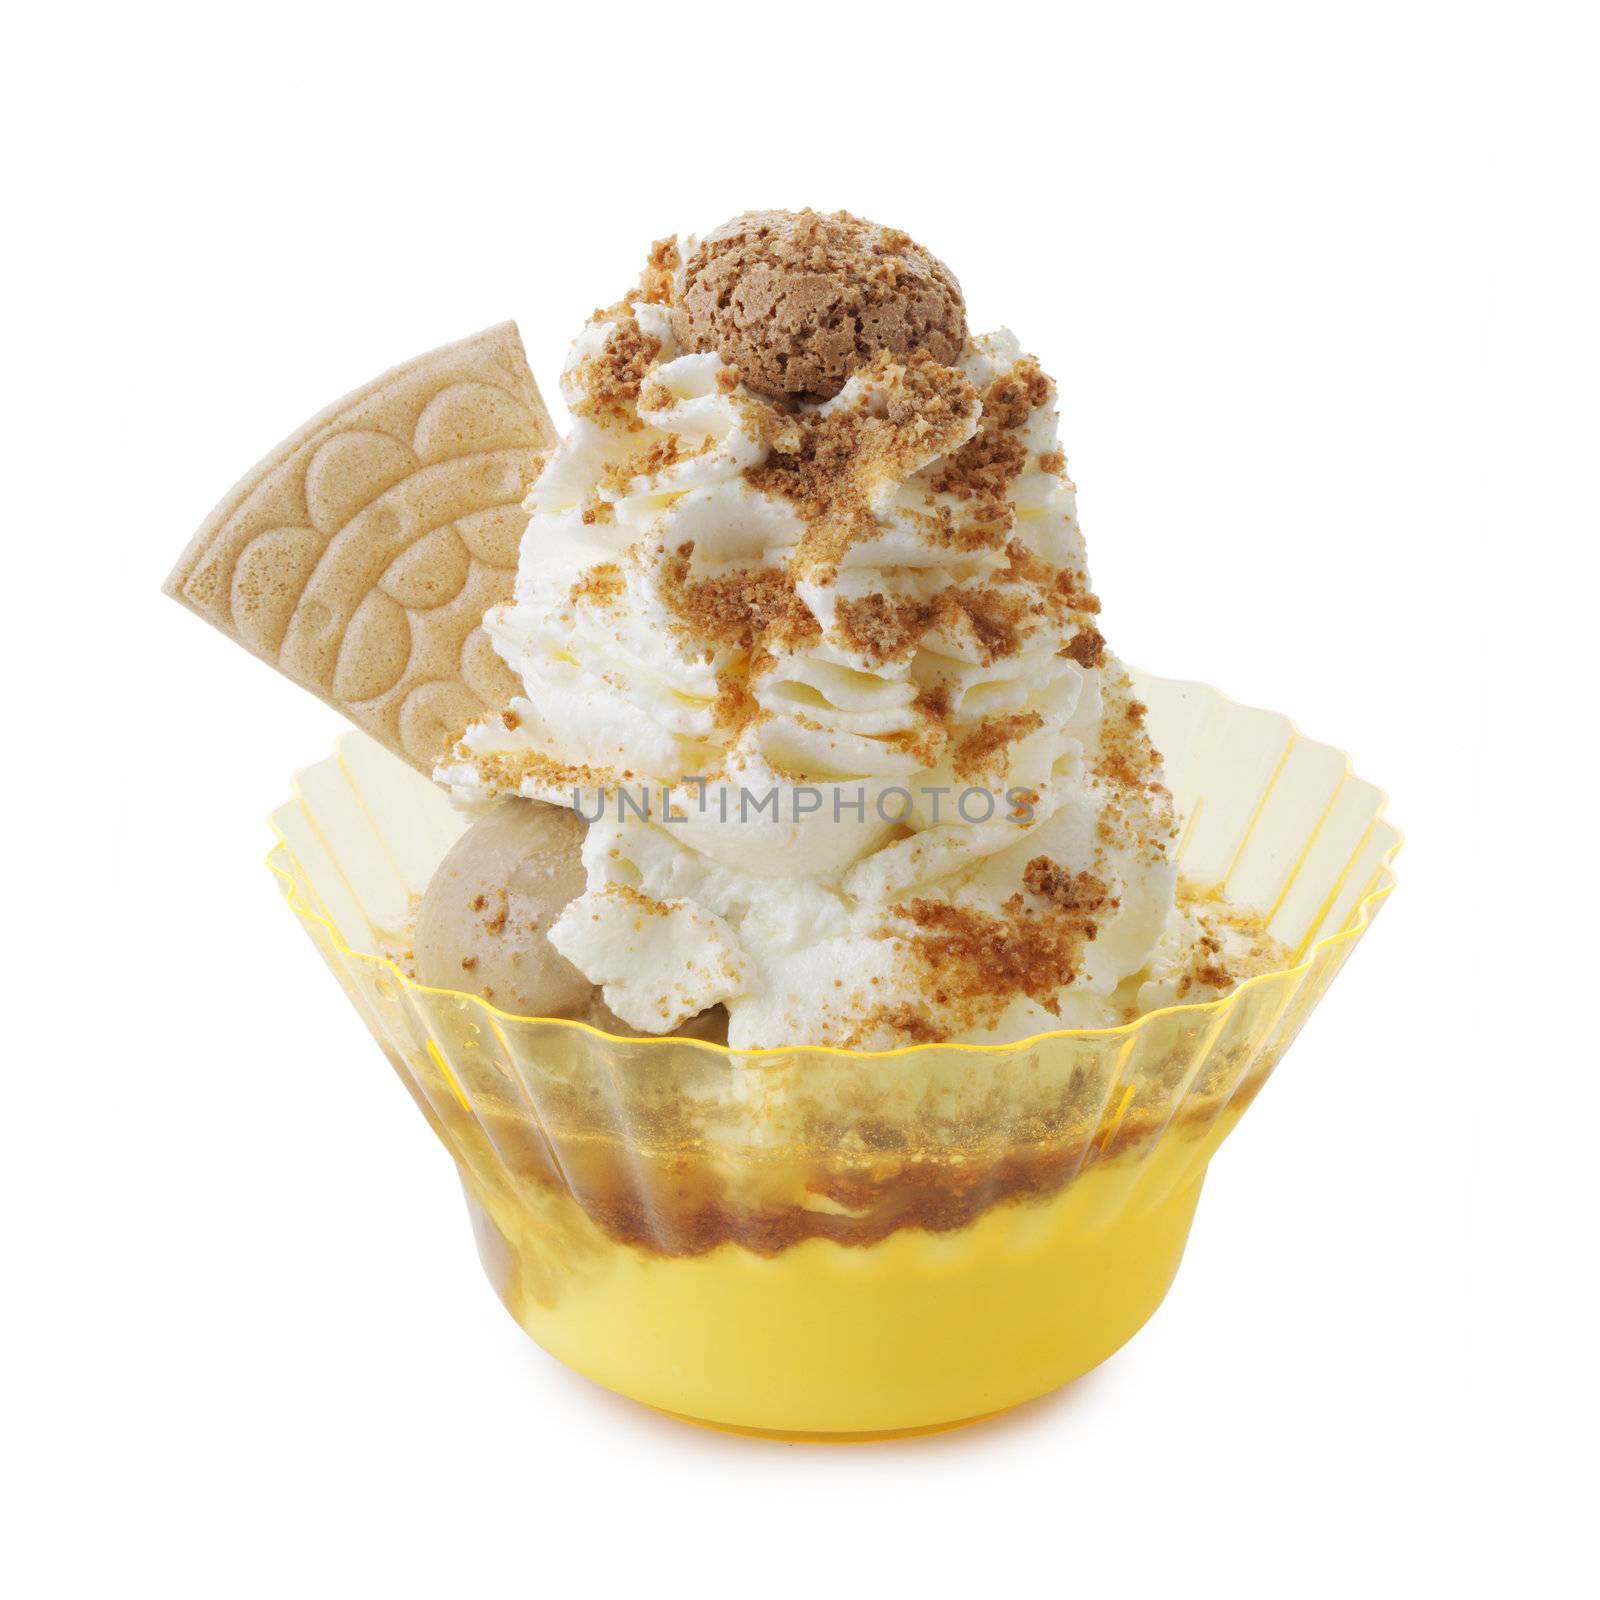 Ice-cream sundae on a white background